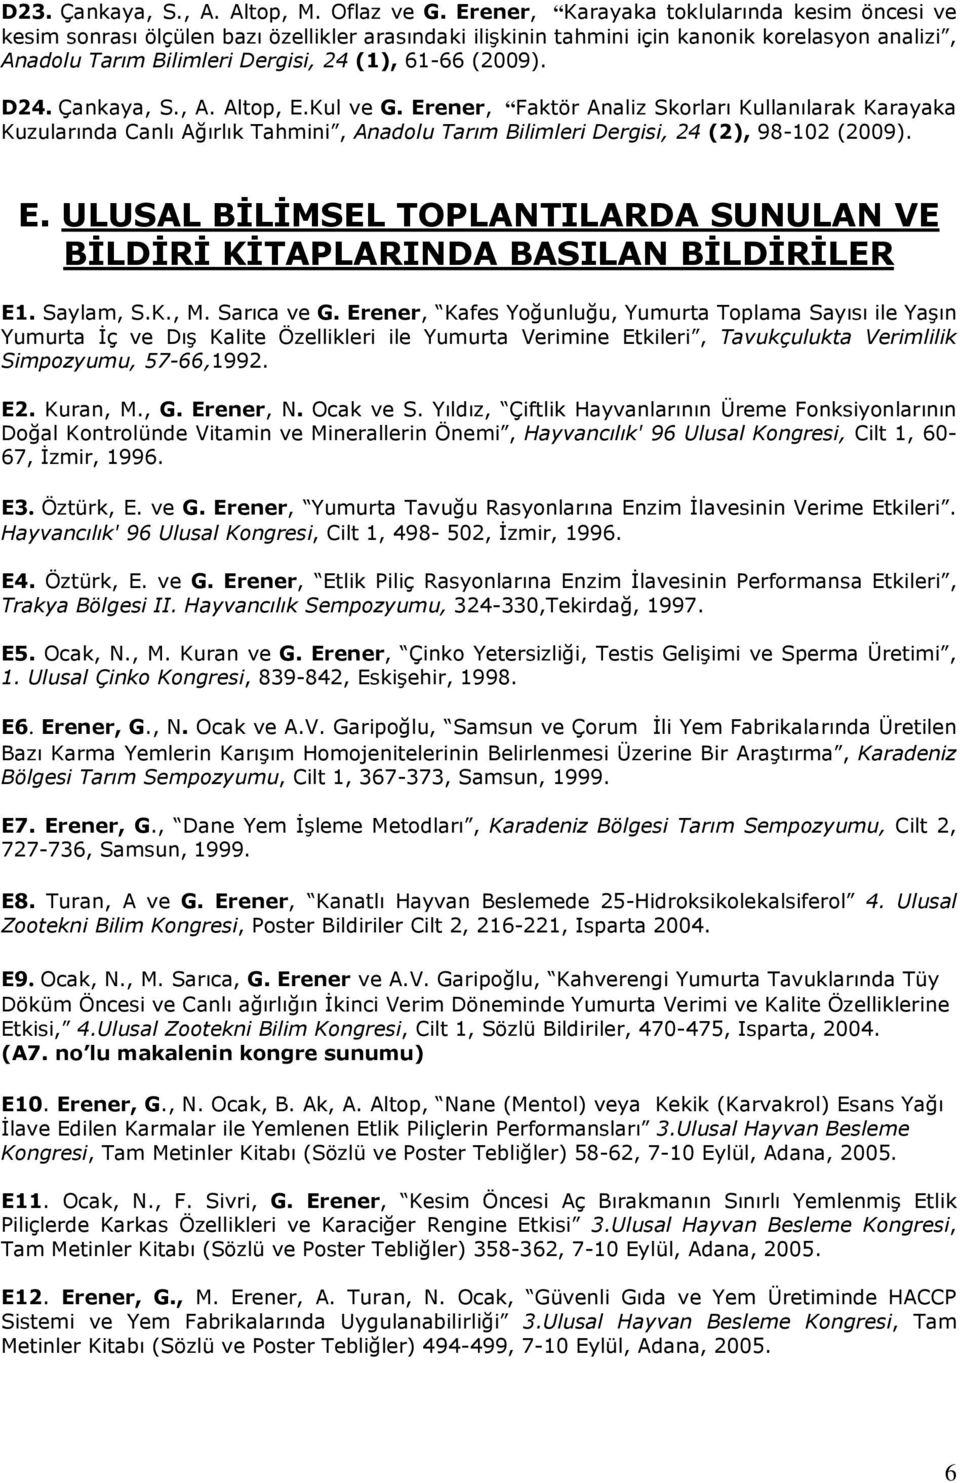 D24. Çankaya, S., A. Altop, E.Kul ve G. Erener, Faktör Analiz Skorları Kullanılarak Karayaka Kuzularında Canlı Ağırlık Tahmini, Anadolu Tarım Bilimleri Dergisi, 24 (2), 98-102 (2009). E. ULUSAL BİLİMSEL TOPLANTILARDA SUNULAN VE BİLDİRİ KİTAPLARINDA BASILAN BİLDİRİLER E1.